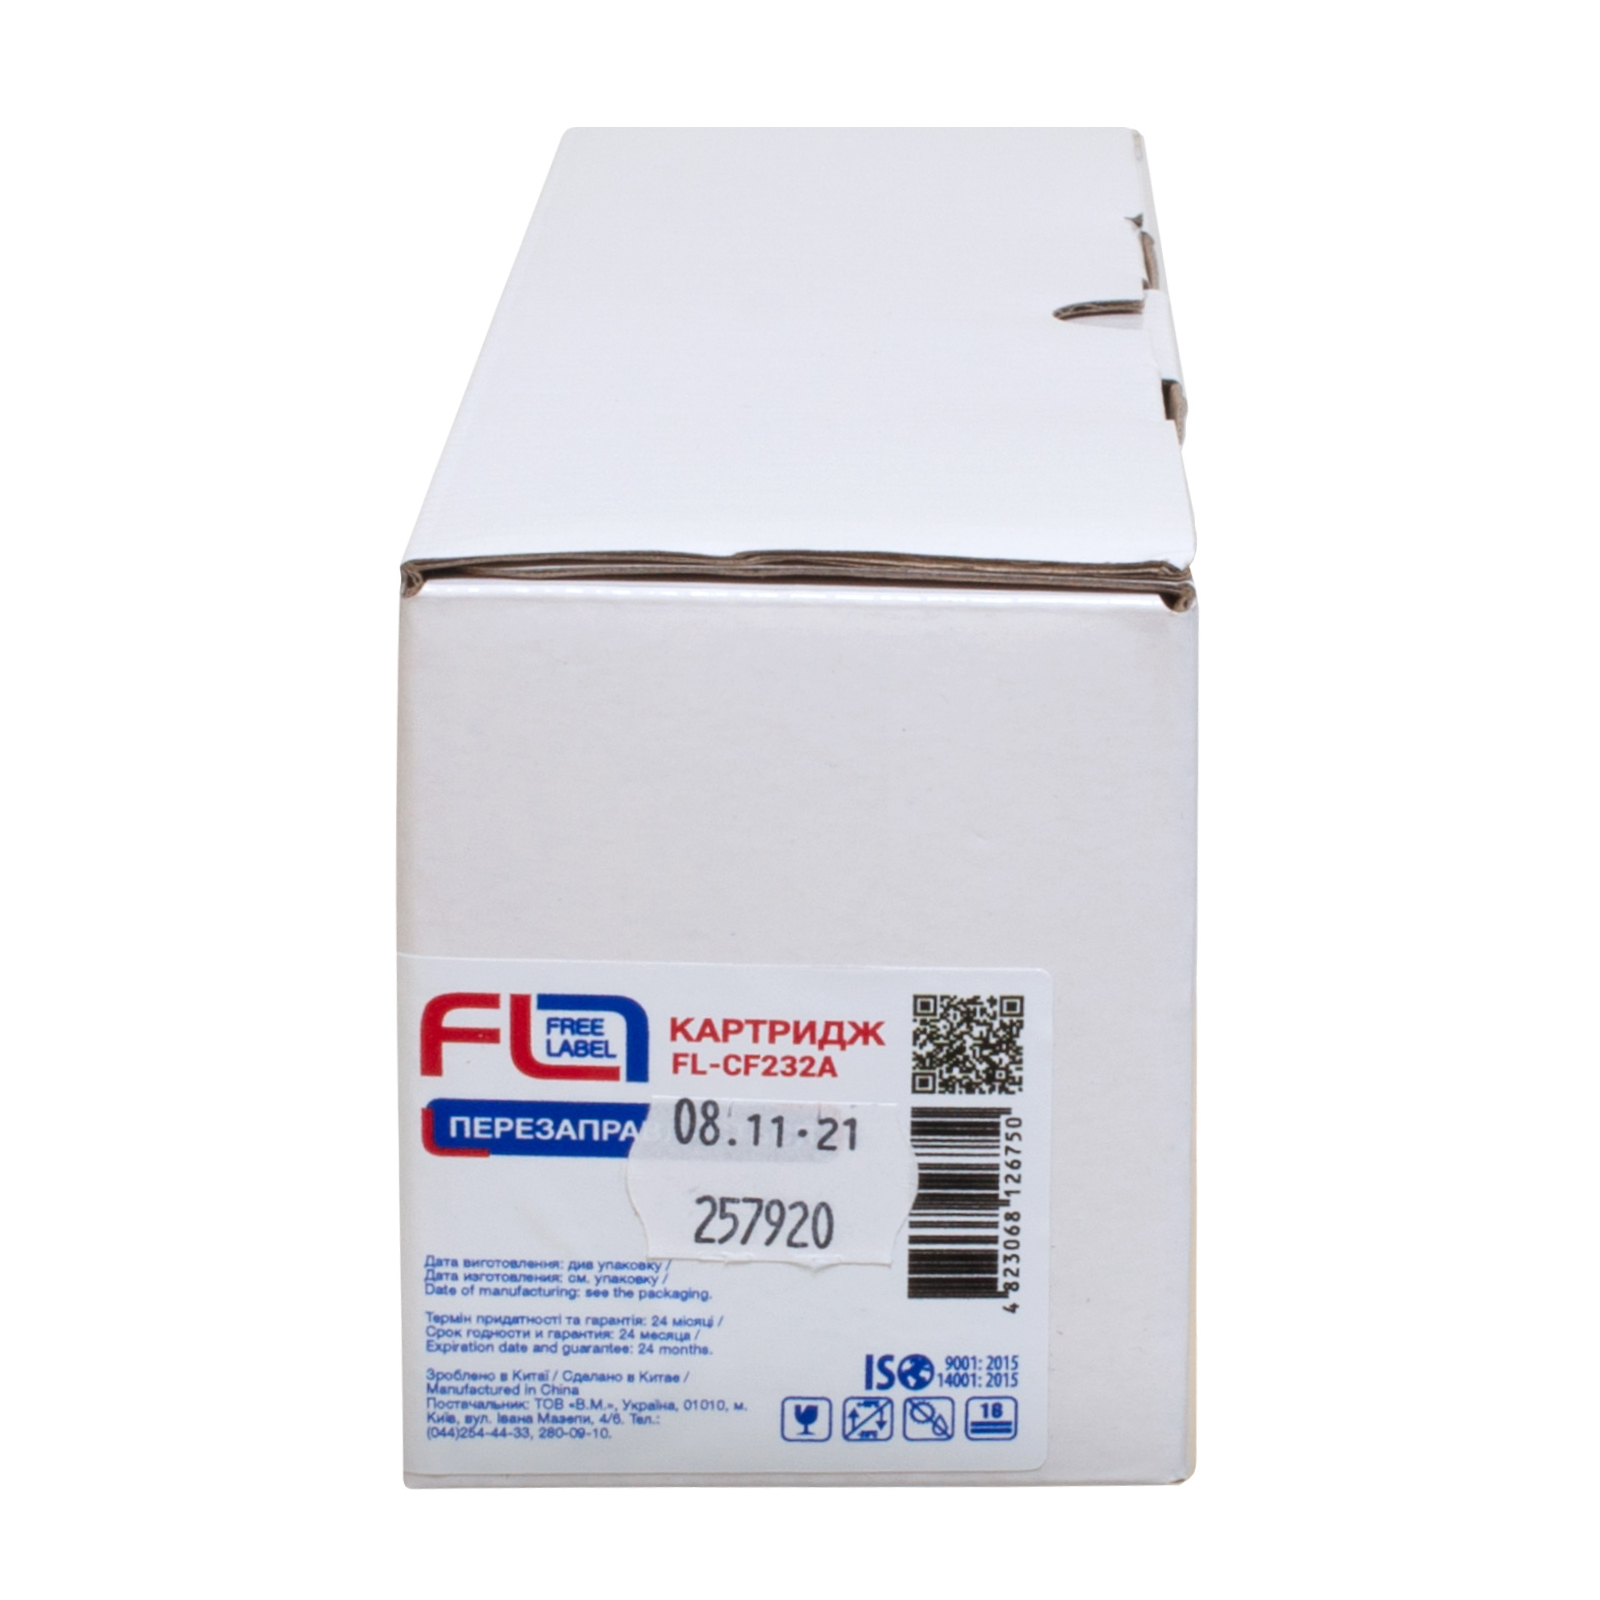 Драм картридж FREE Label HP 32A (CF232A) (FL-CF232A) изображение 3